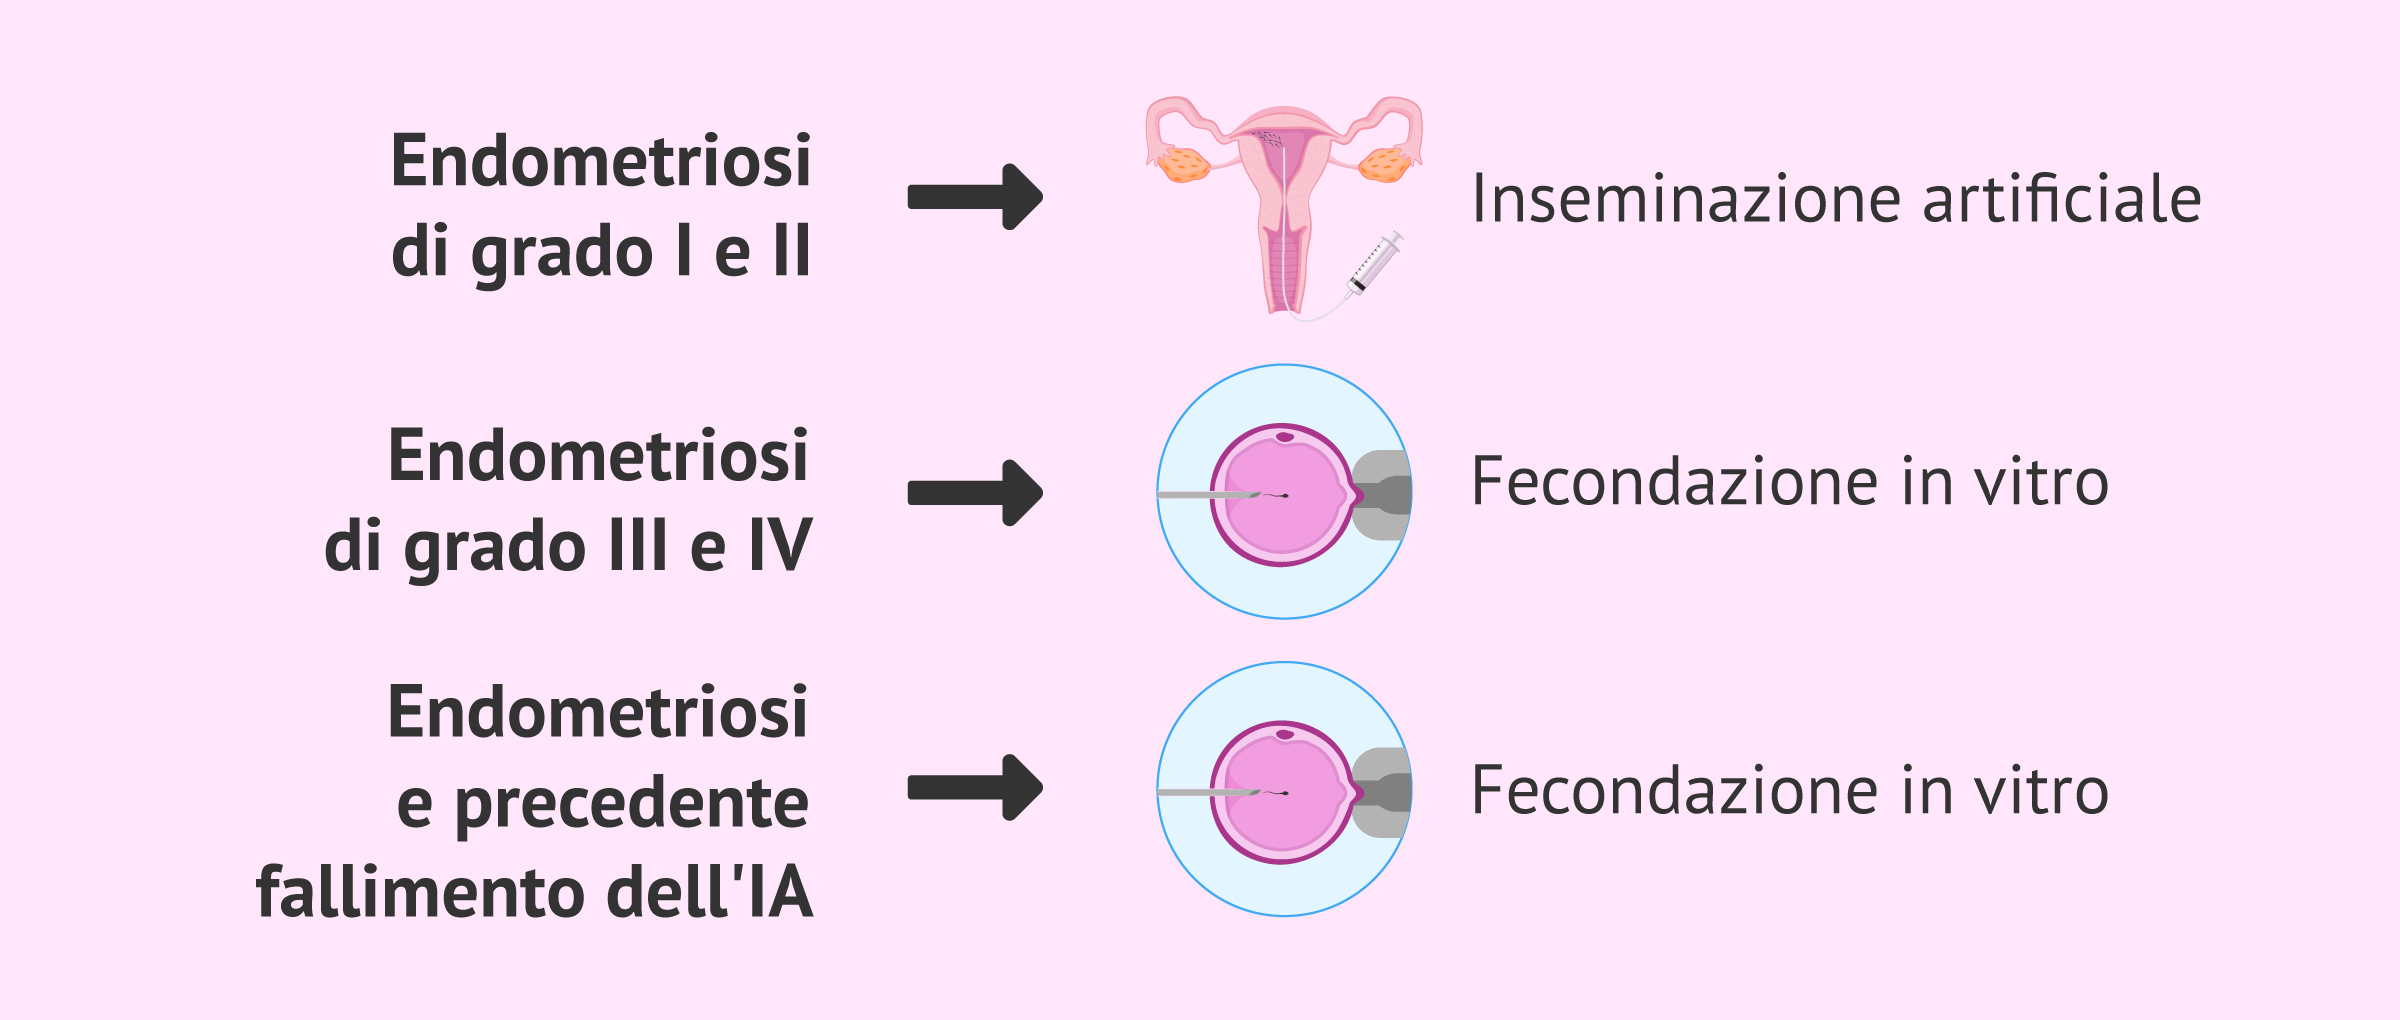 Endometriosi e trattamenti per la fertilità